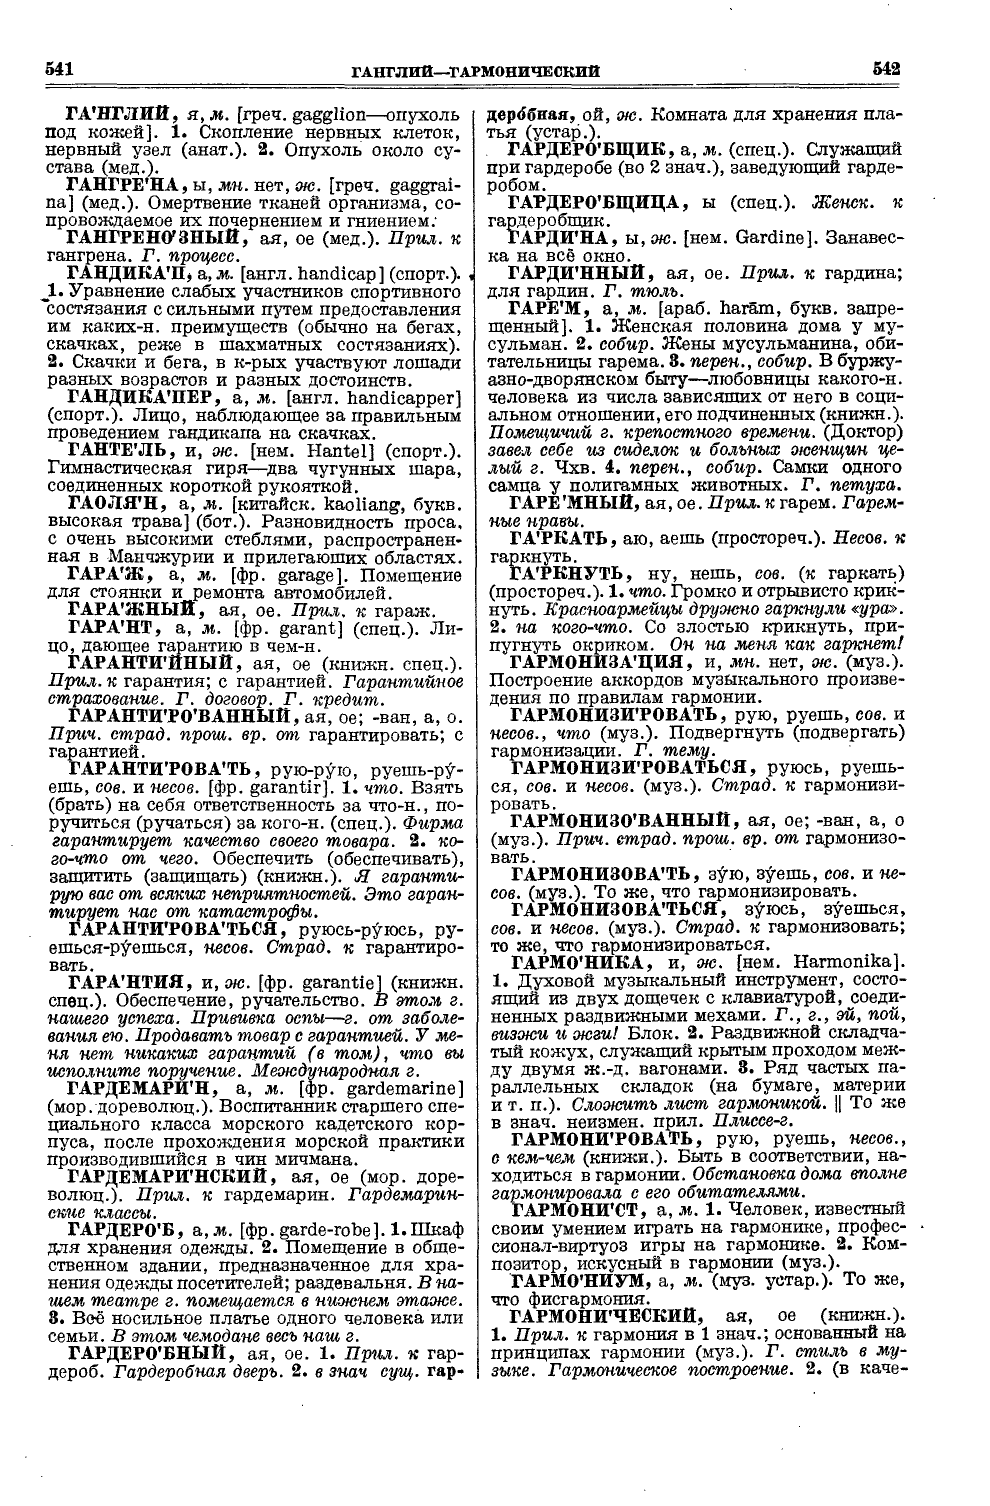 Фотокопия pdf / скан страницы 309 толкового словаря Ушакова (том 1)